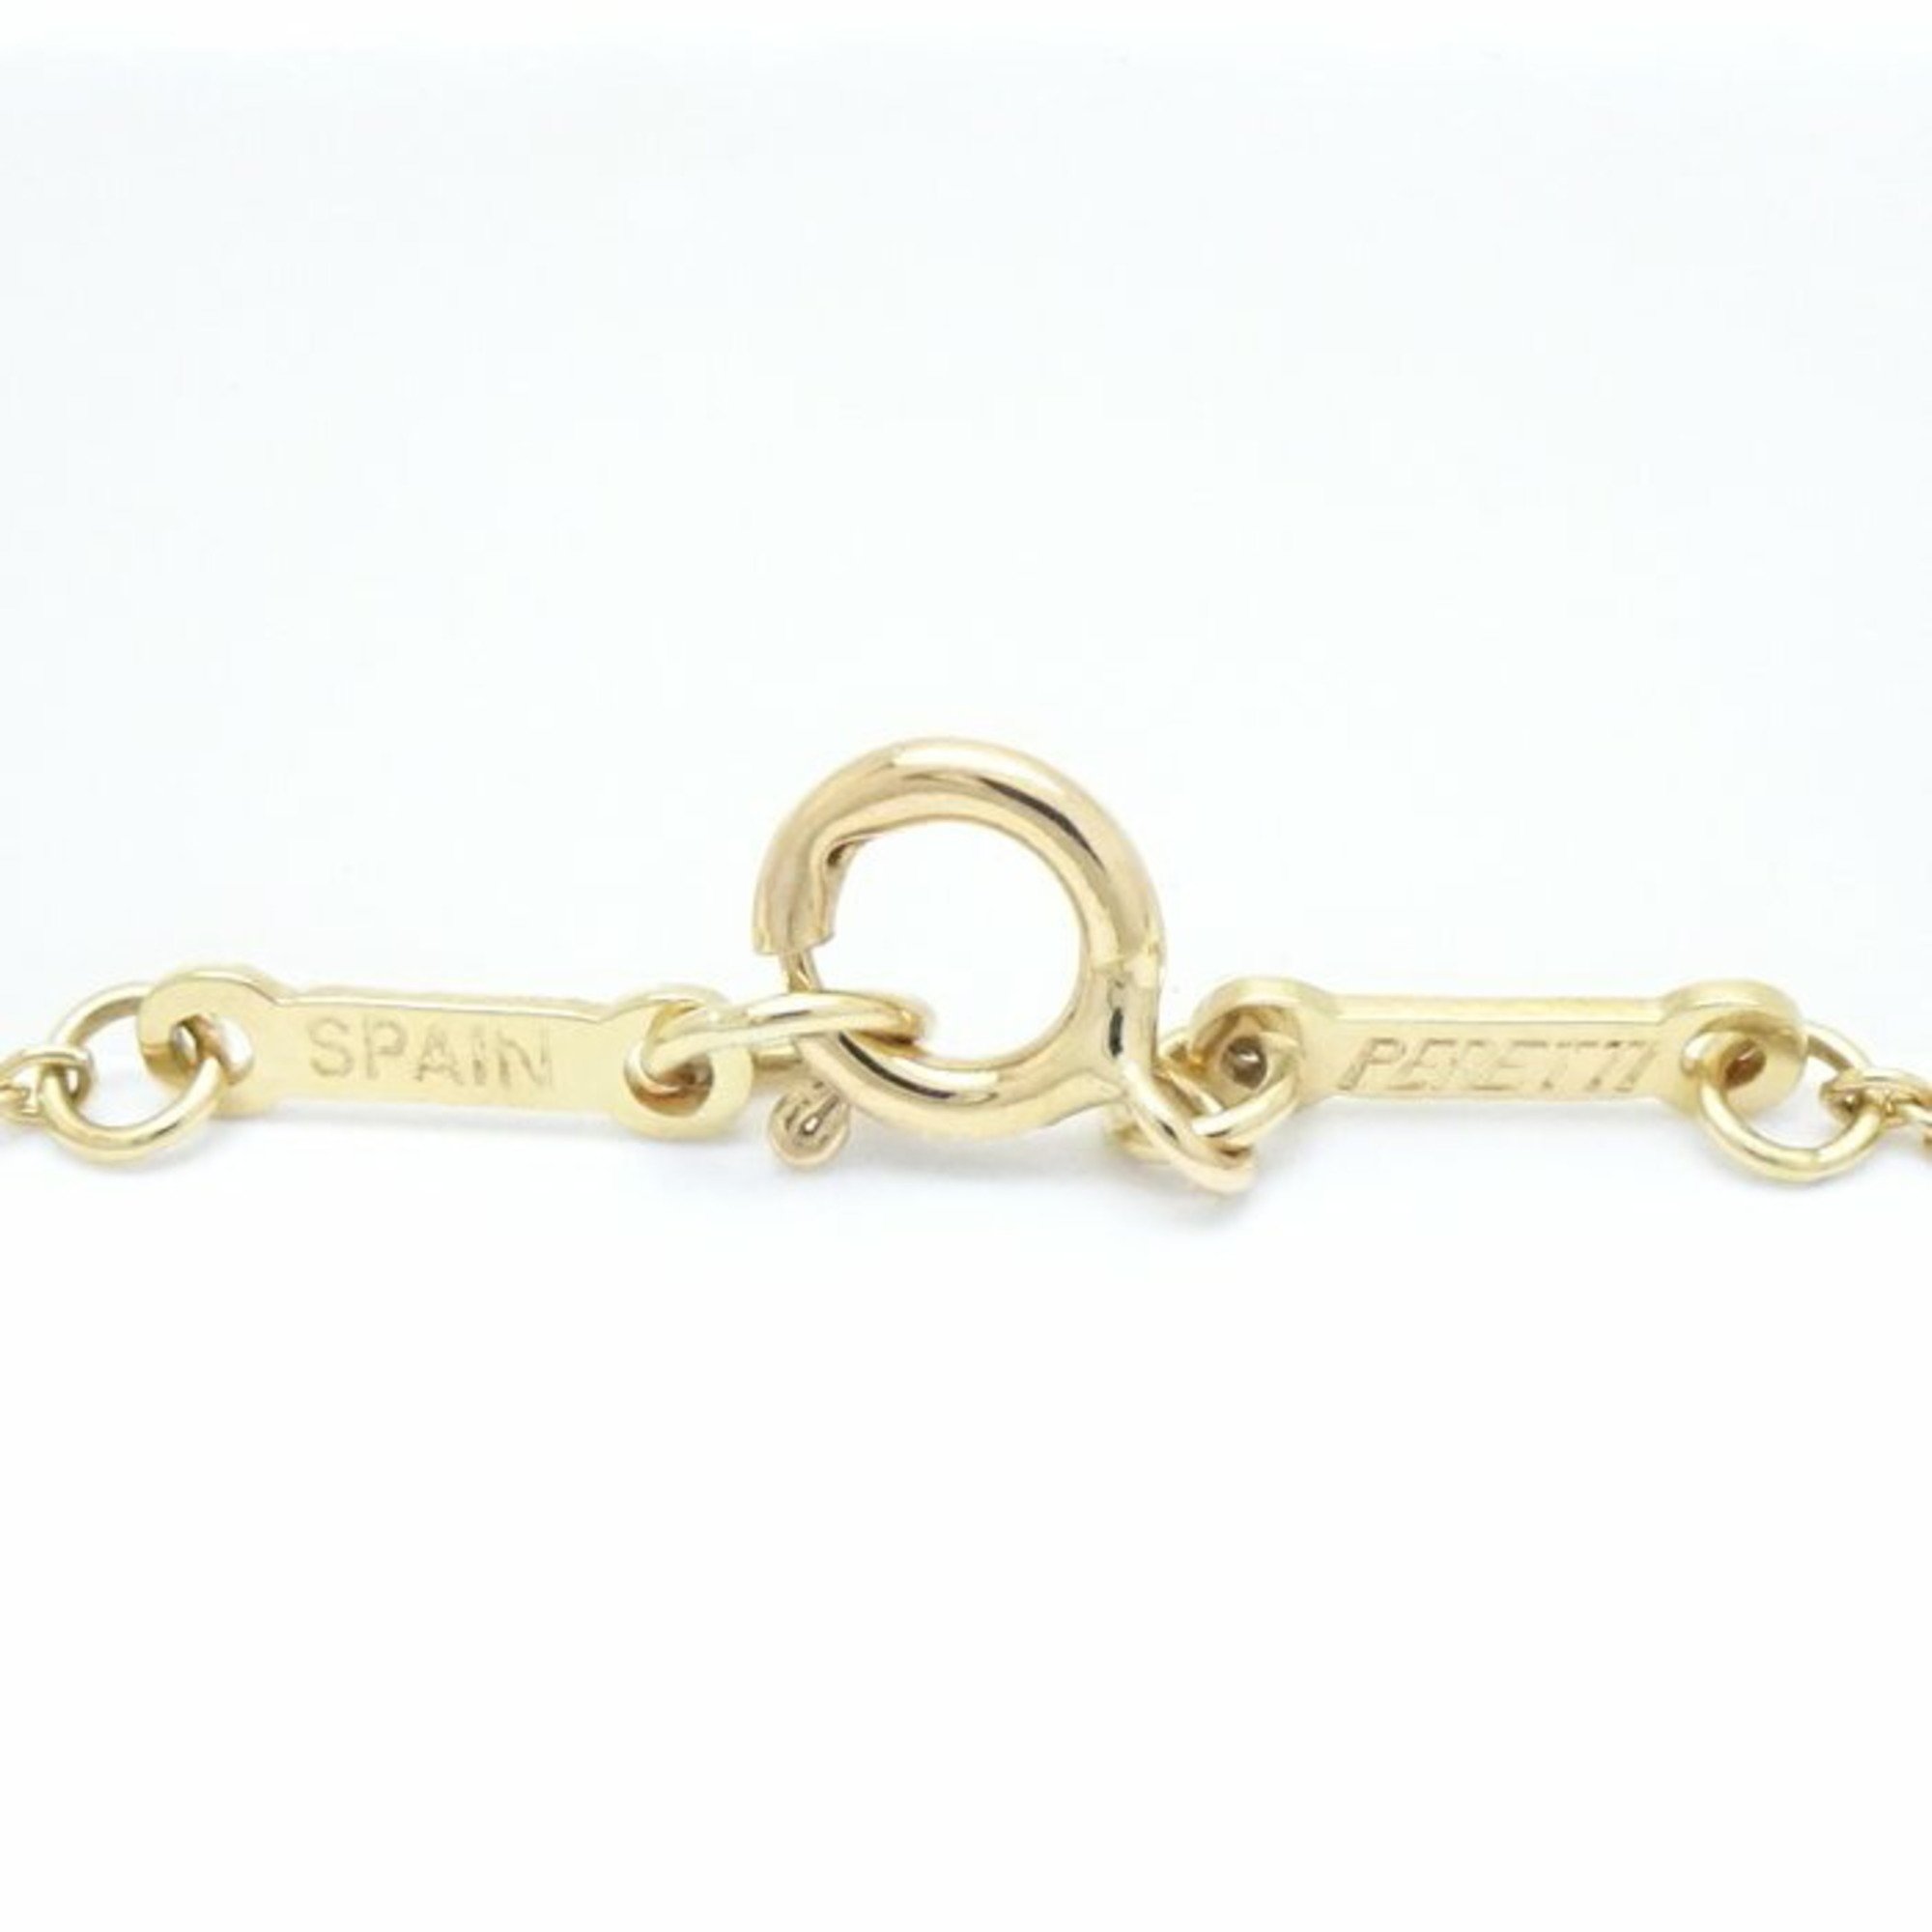 TIFFANY&Co. Tiffany Open Heart Necklace 3P Elsa Peretti K18YG Yellow Gold 291350